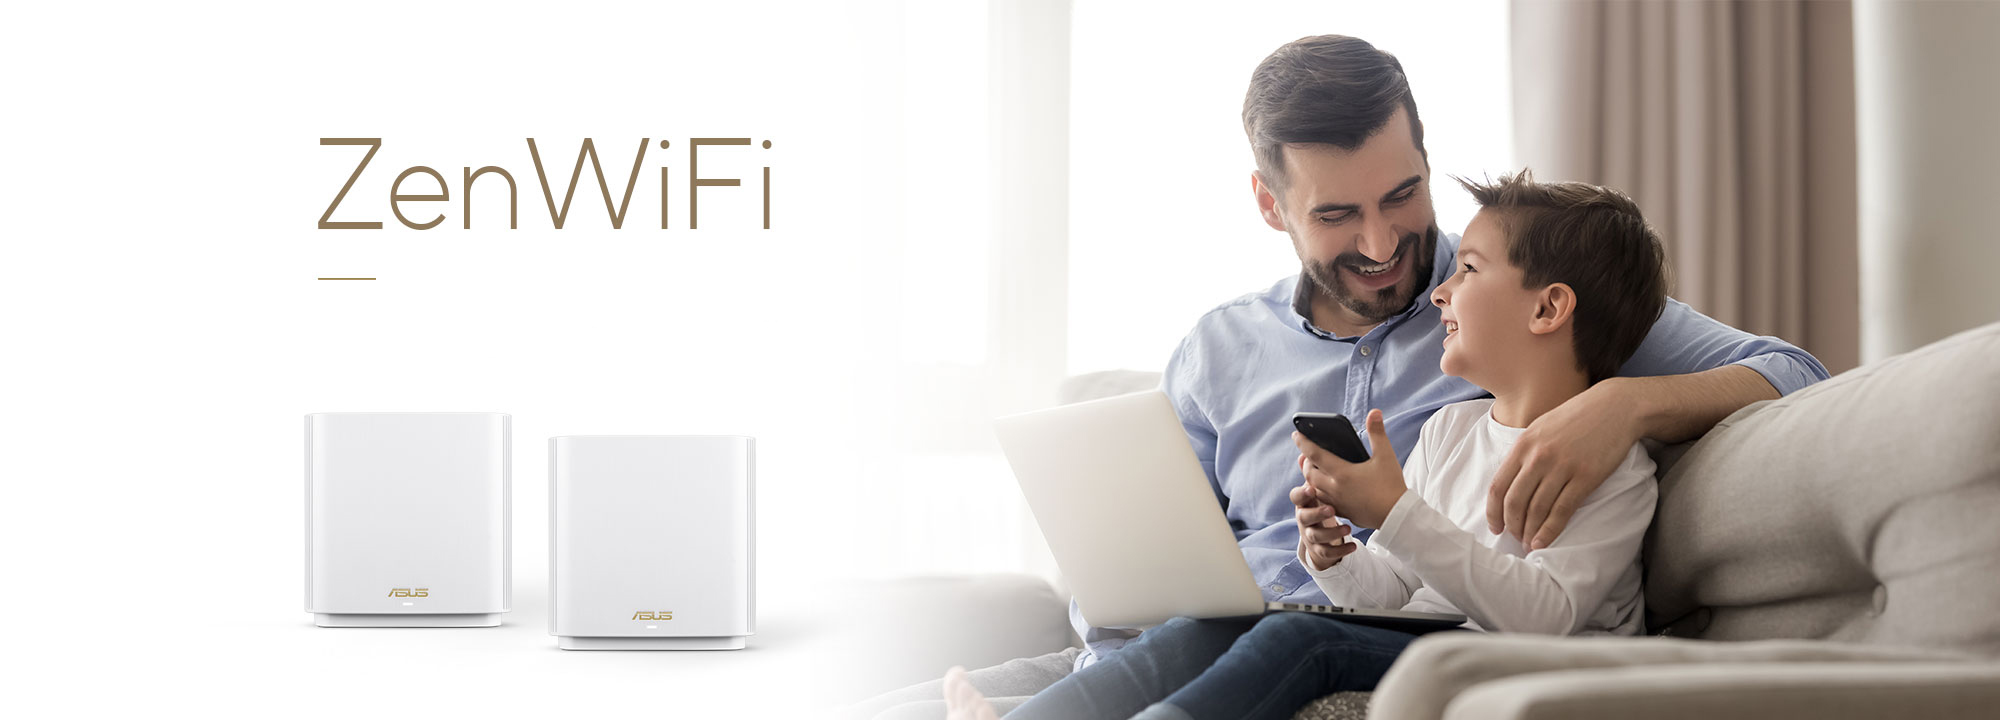 ASUS ZenWiFi est le meilleur système WiFi maillé pour couvrir la maison, offrant une connexion stable et rapide à tous vos appareils.